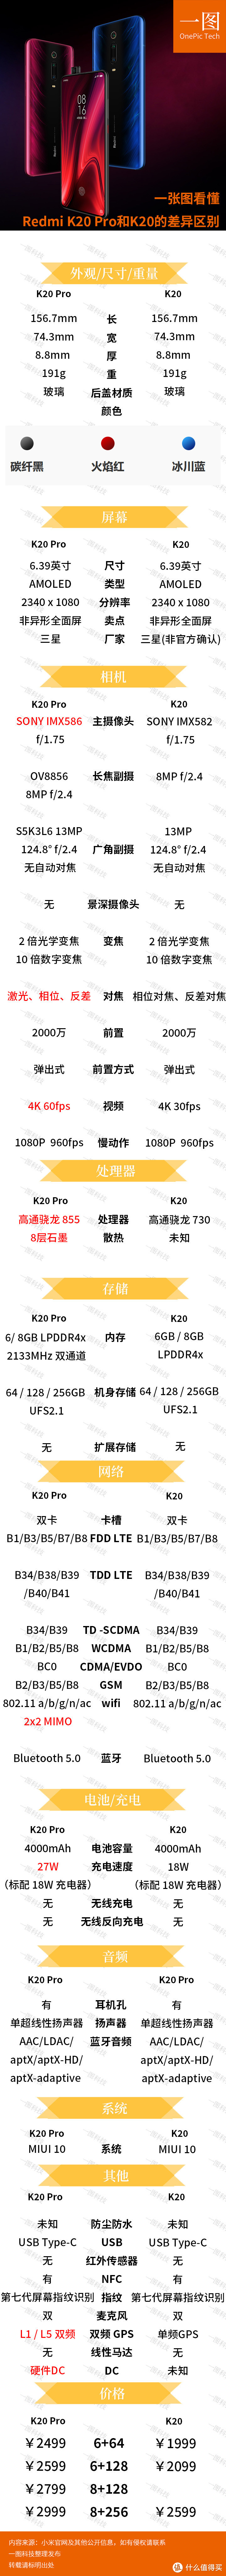 一张图看懂红米Redmi K20 Pro和K20的差异区别